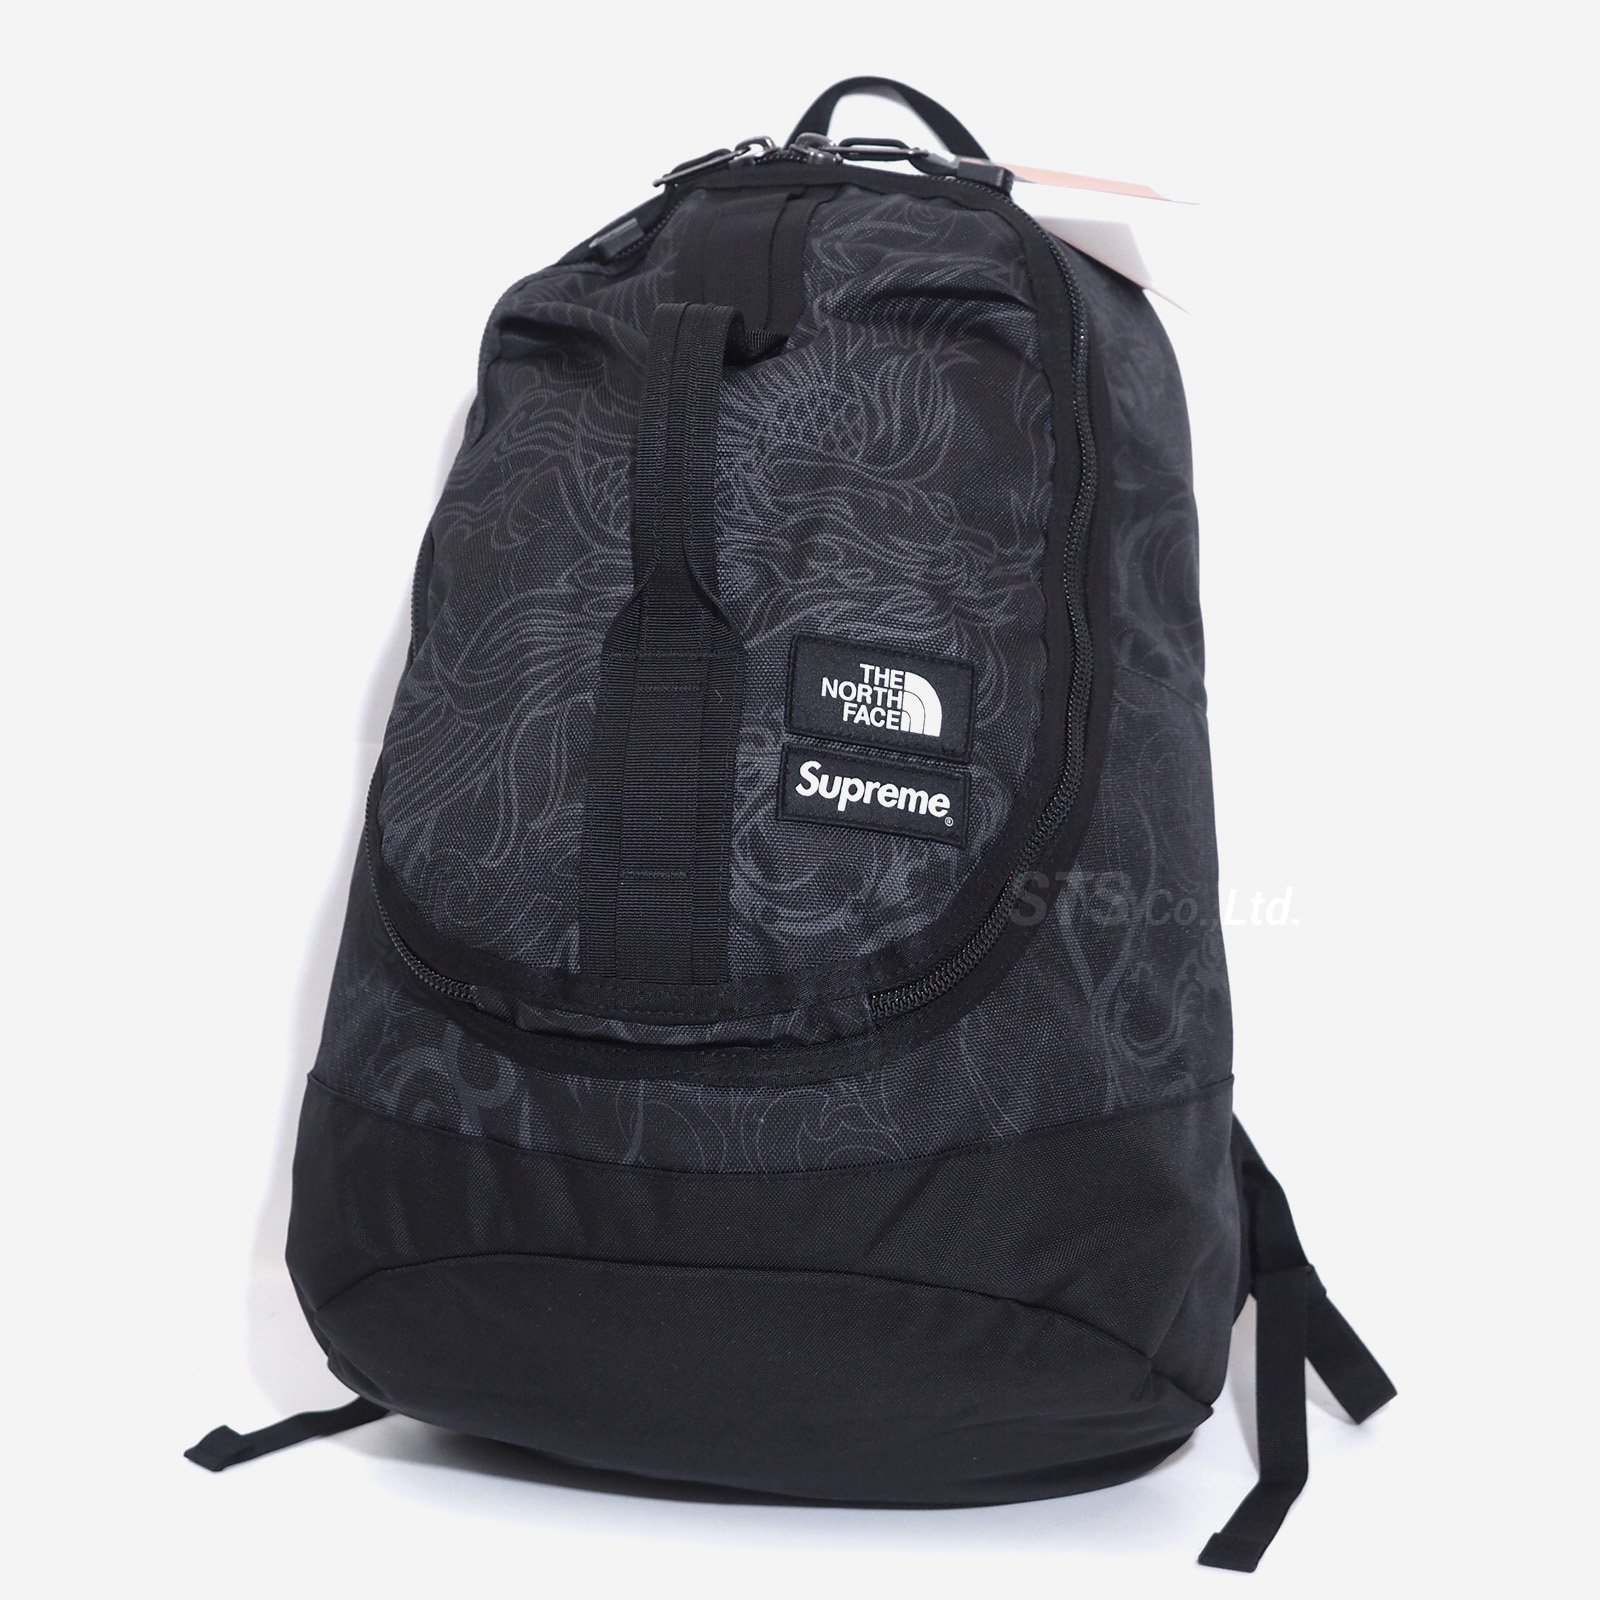 supremeSupreme / TNF Steep Tech Backpack